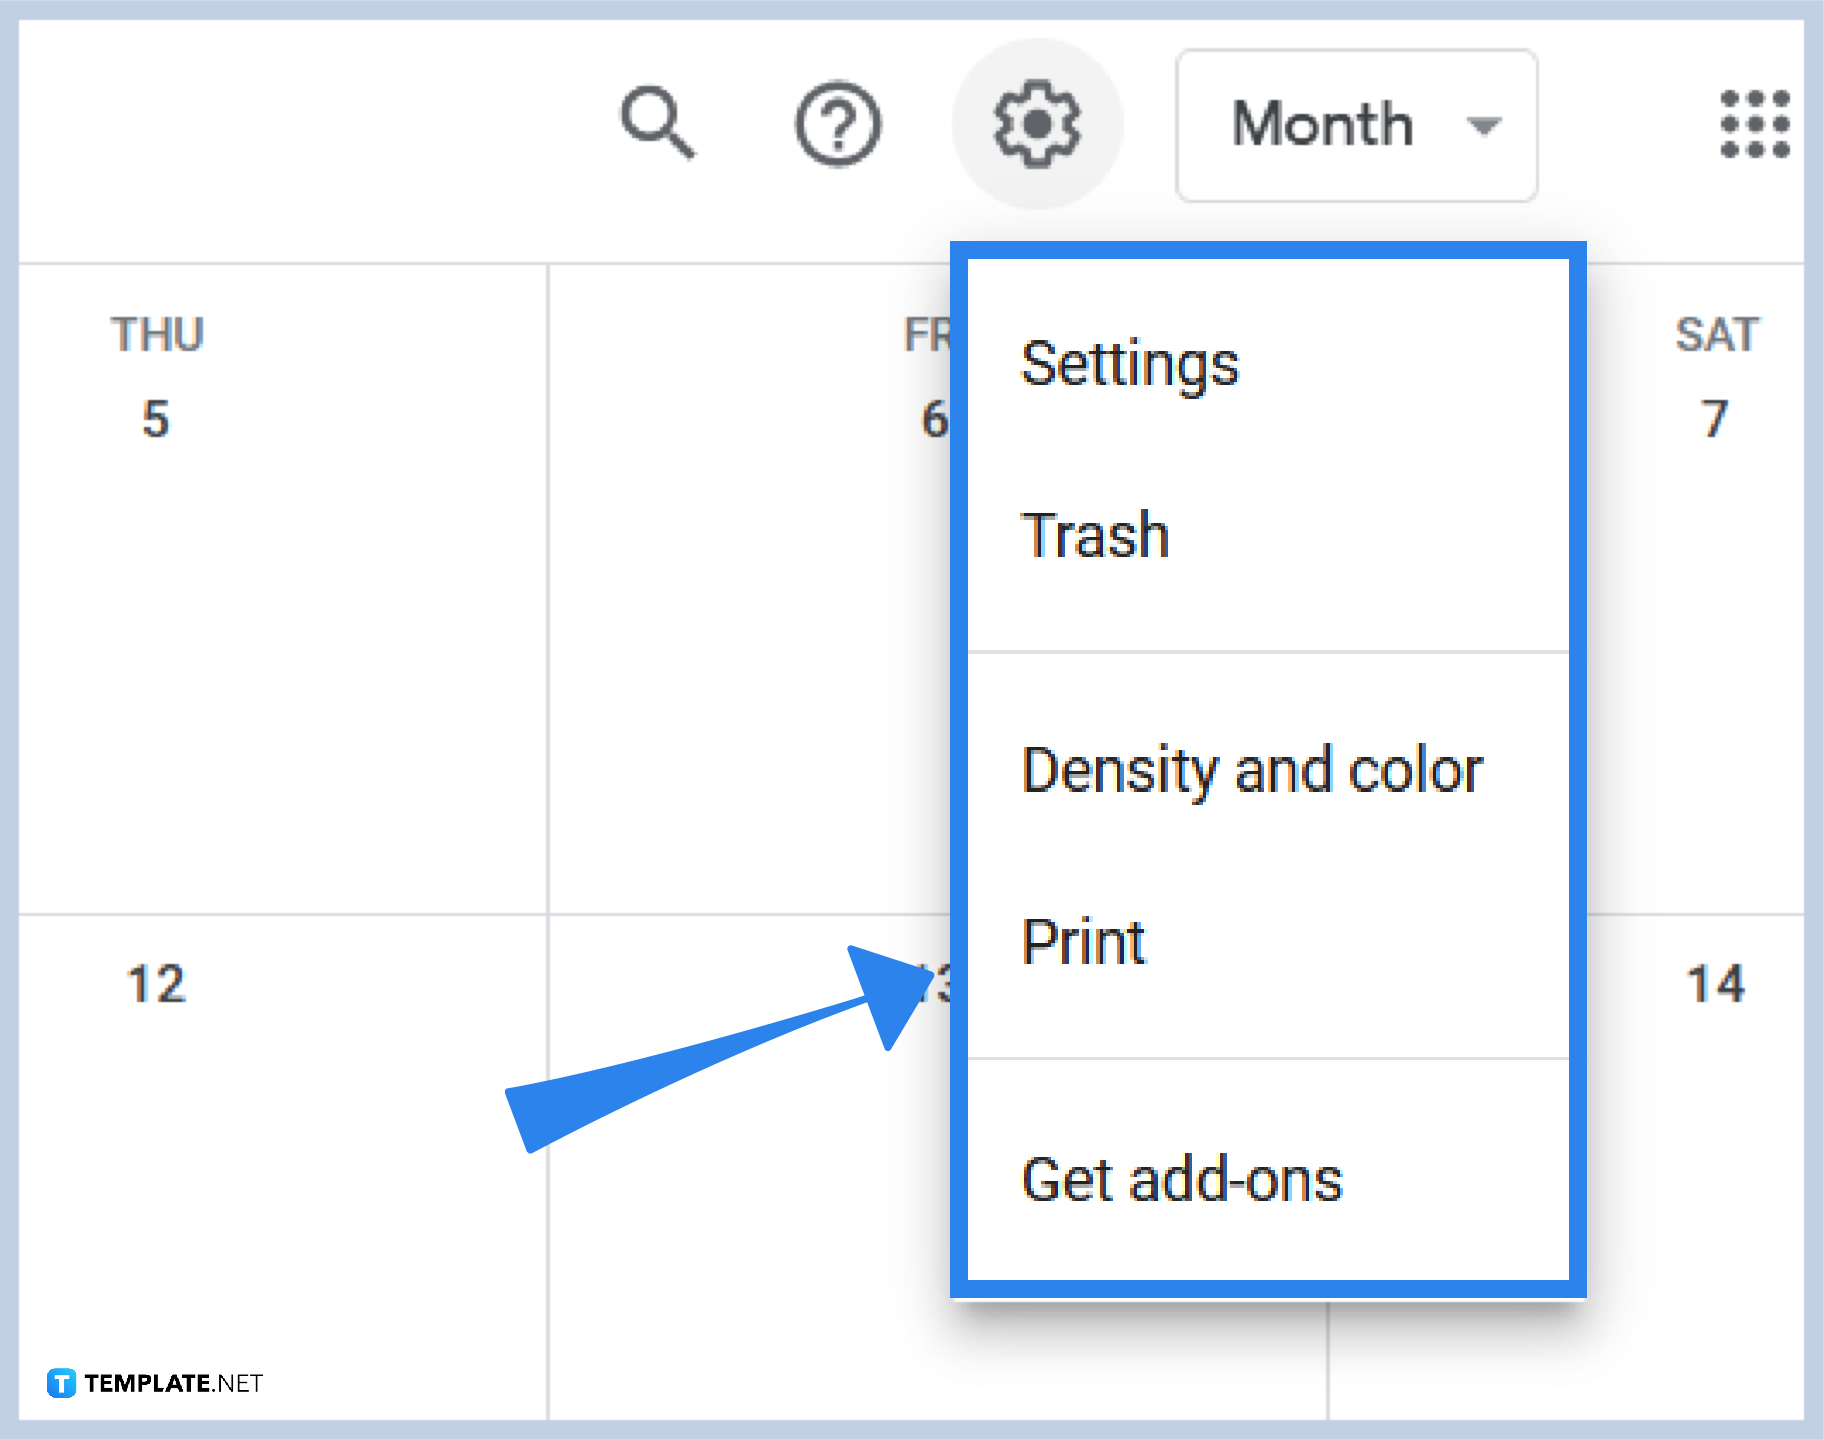 How to Print Google Calendar